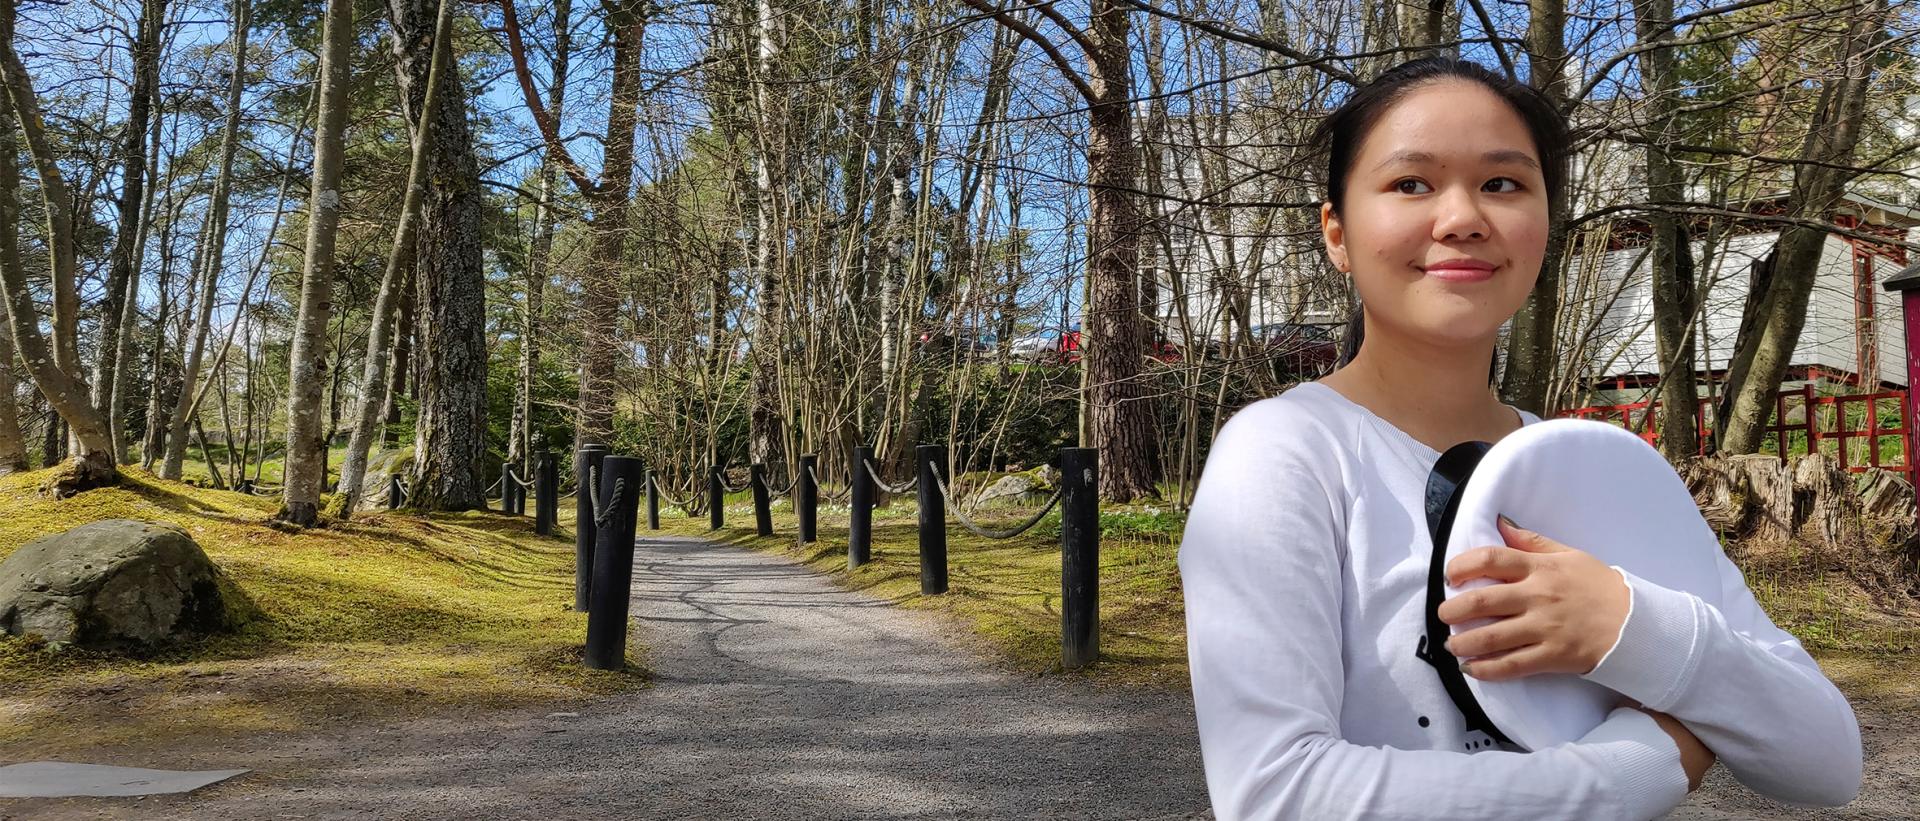 Ylioppilas Maiju Lehtivaara istumassa japanilaisen puutarhan portailla Roihuvuoressa